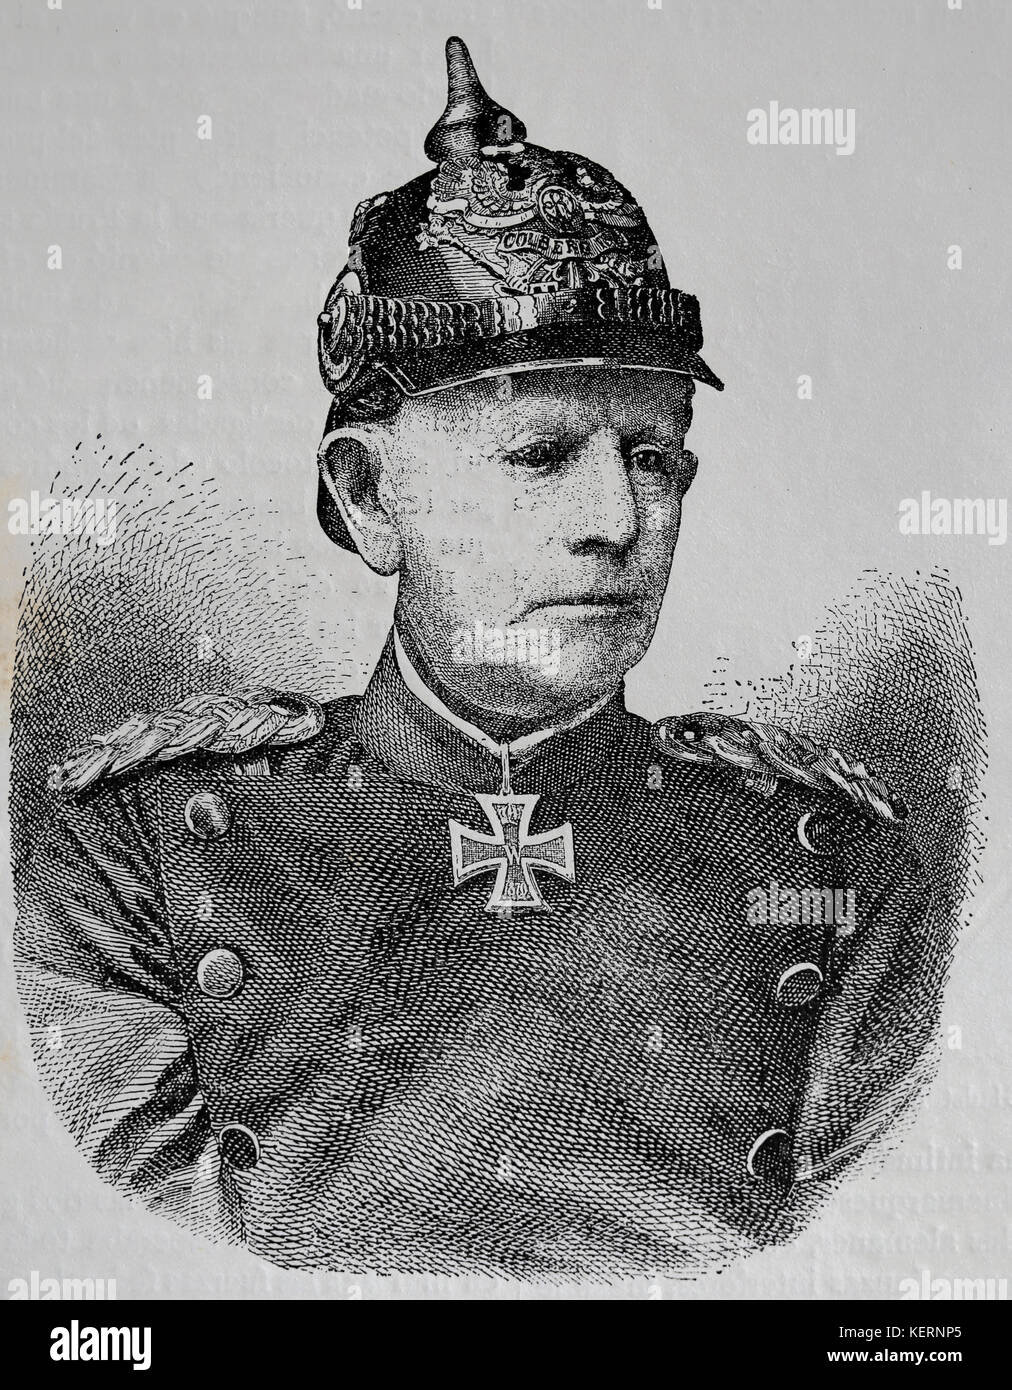 Helmuth von moltke der Ältere (1800-1891), deutscher Feldmarschall. Stabschef der preußischen Armee. Gravieren, nuestro Siglo, 1883, Barcelona, Spanien. Stockfoto